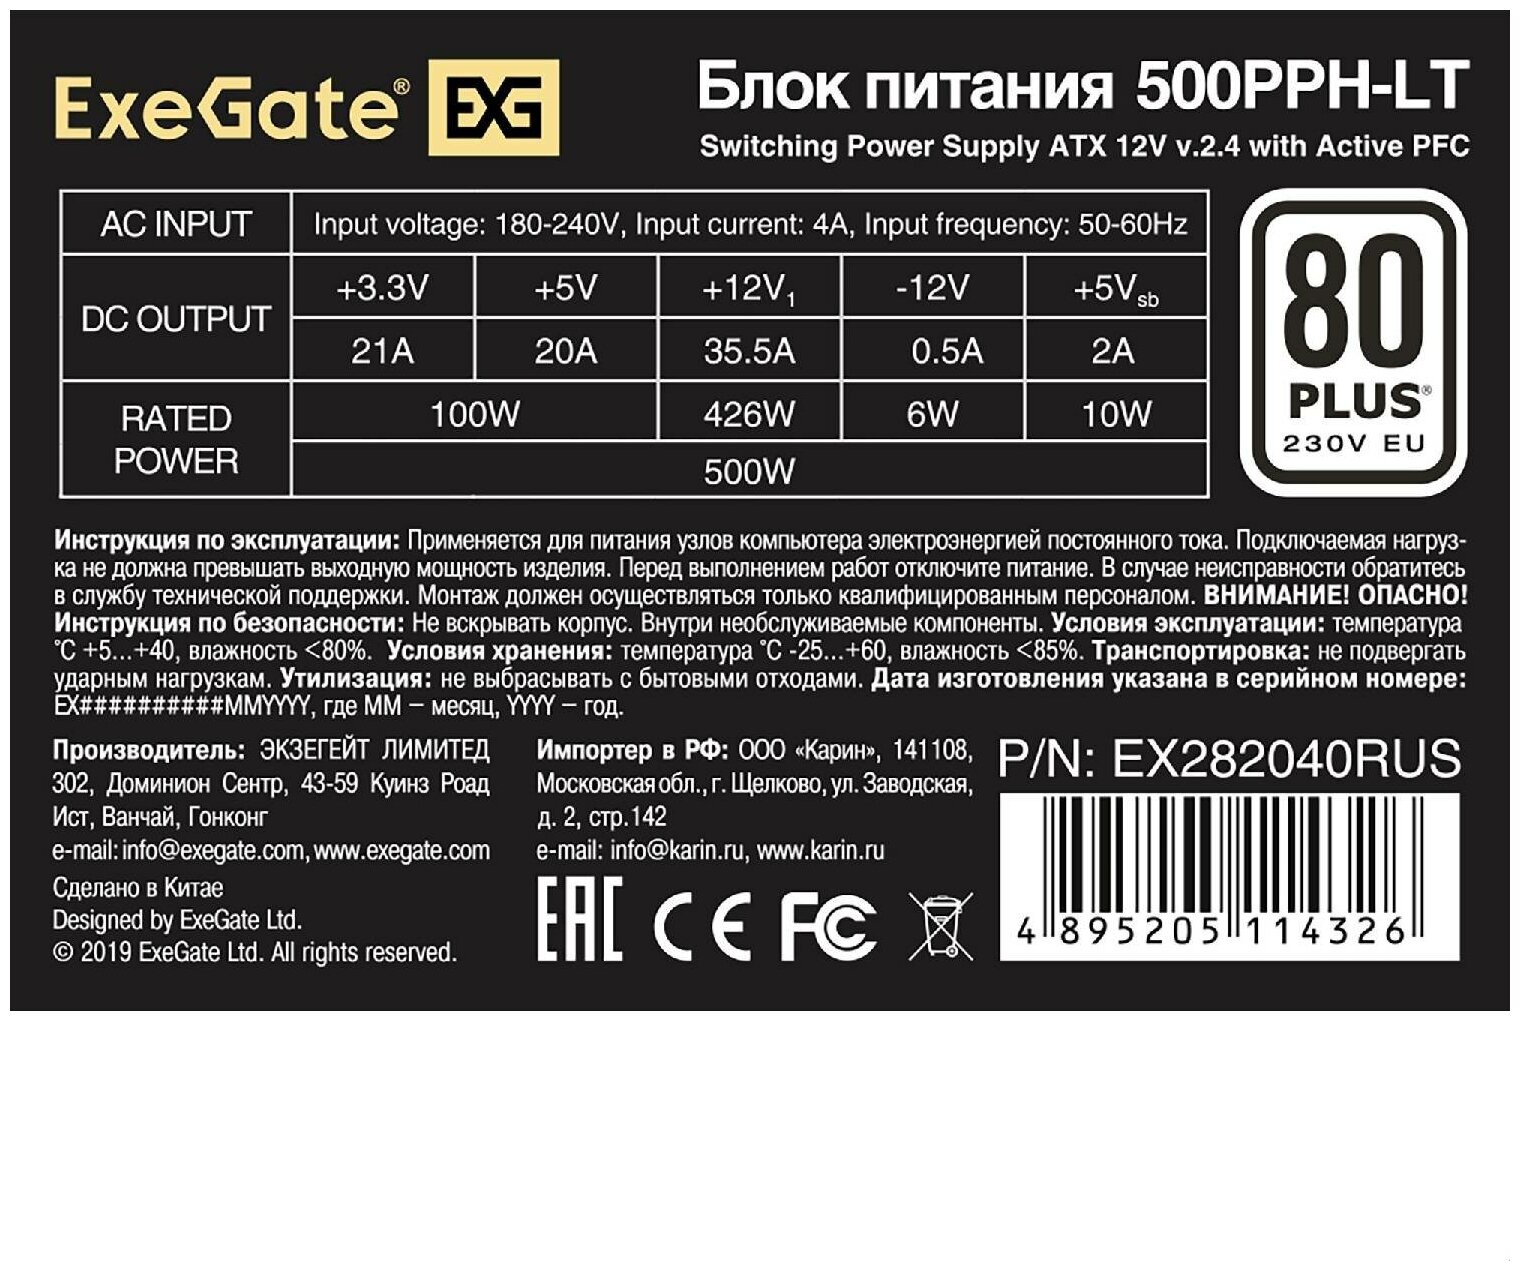 Блок питания EXEGATE 80 PLUS® 500PPH-LT-S-OEM (ATX, APFC, КПД 82% (80 PLUS)SC, 12cm fan, 24pin, (4+4)pin, PCIe, 5xSATA, 3xIDE, black, кабель